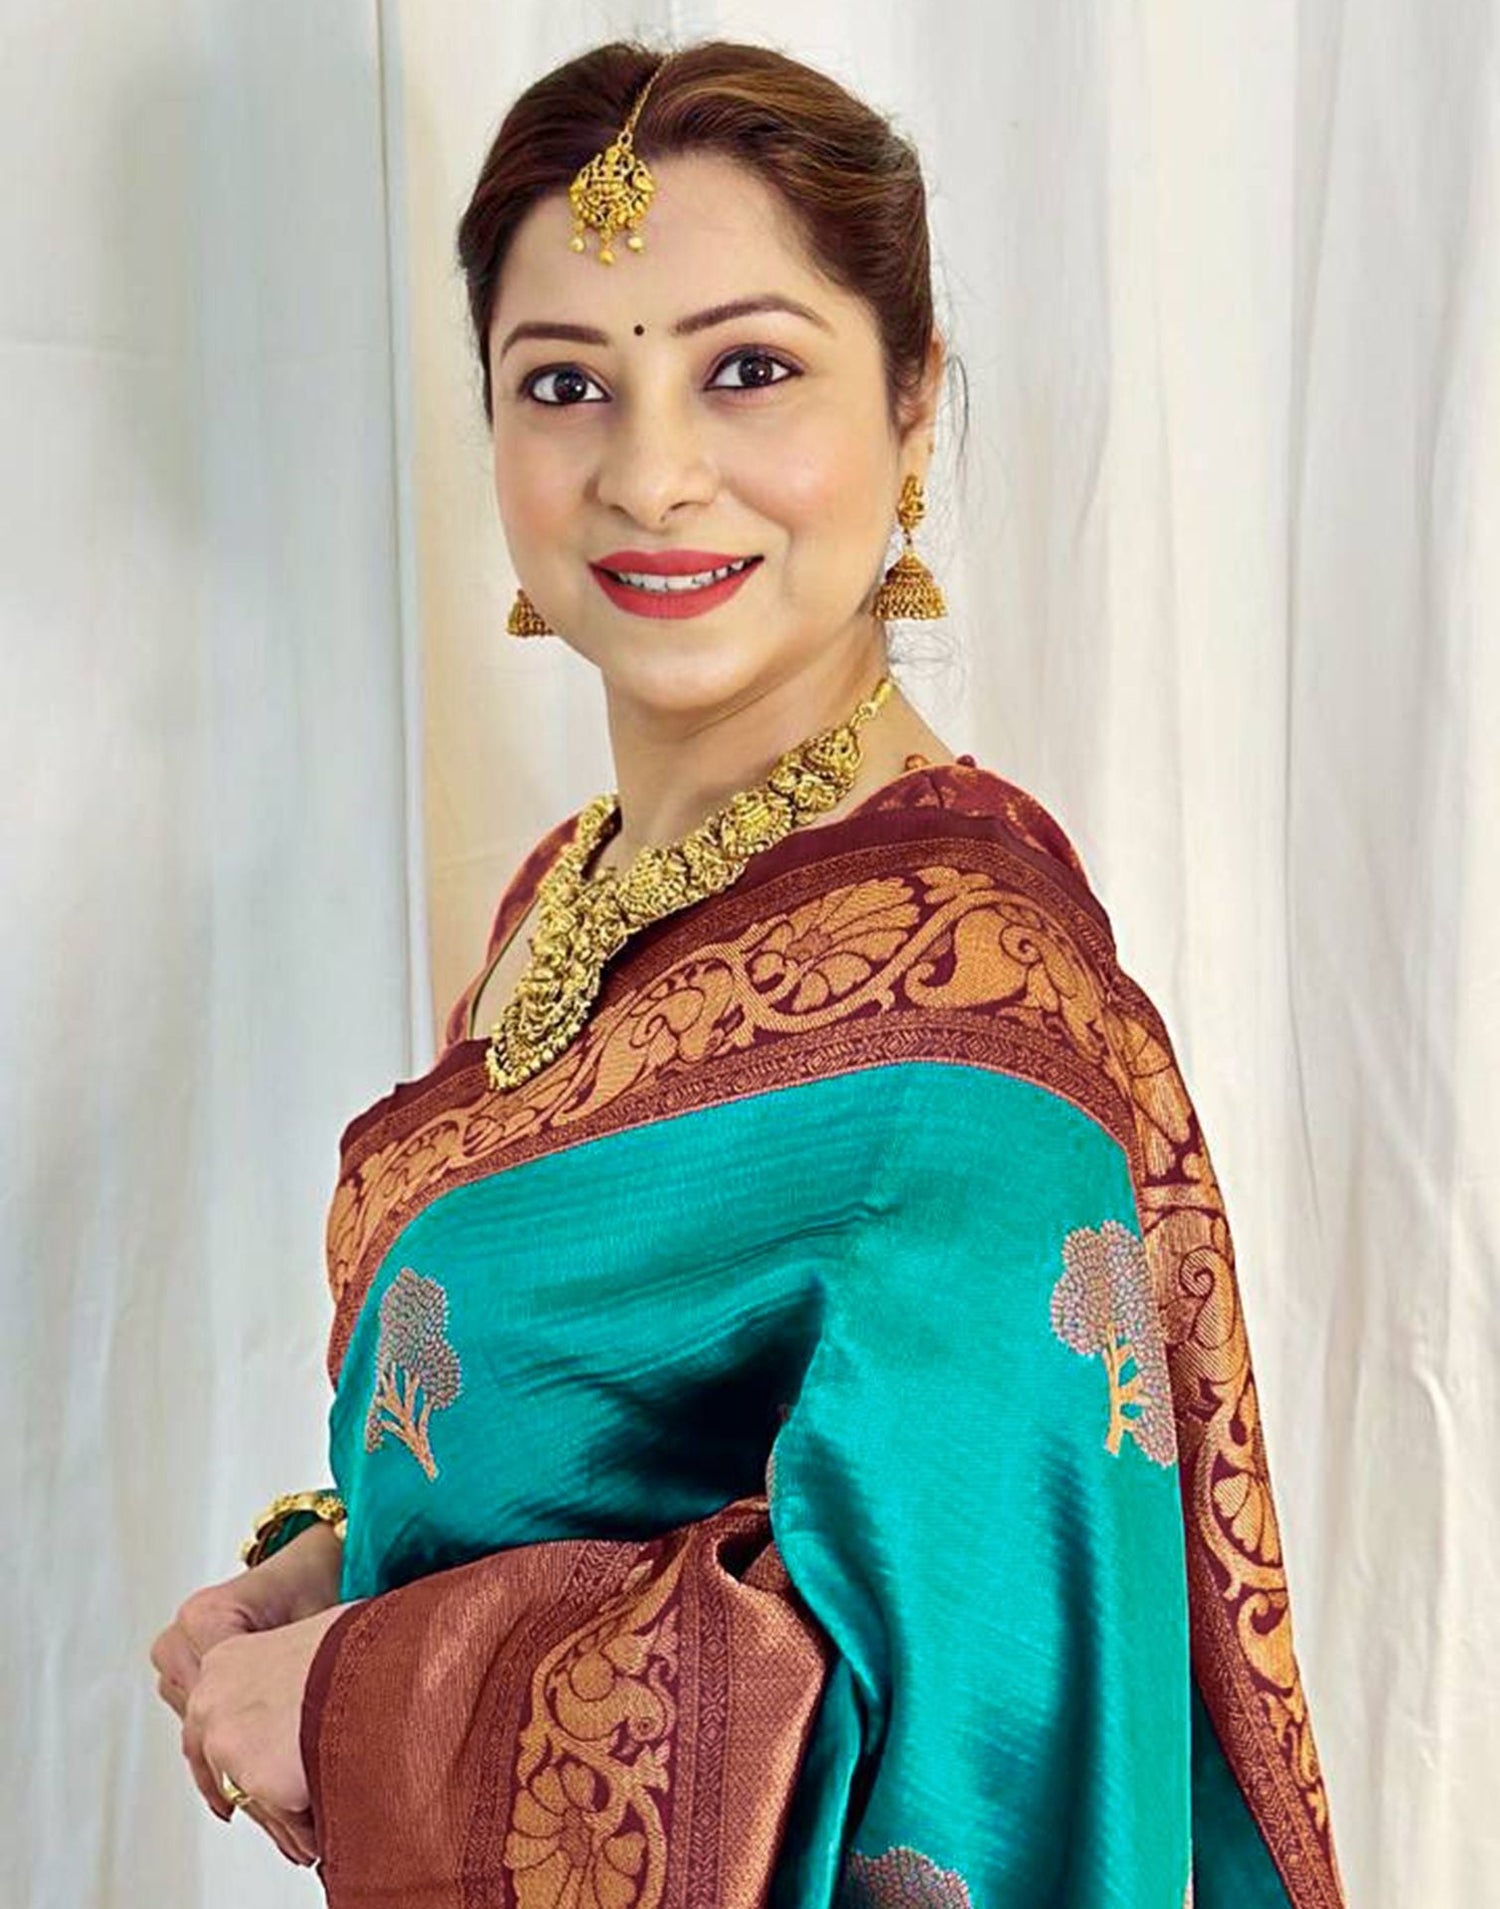 Rama Green Jacquard Silk Saree